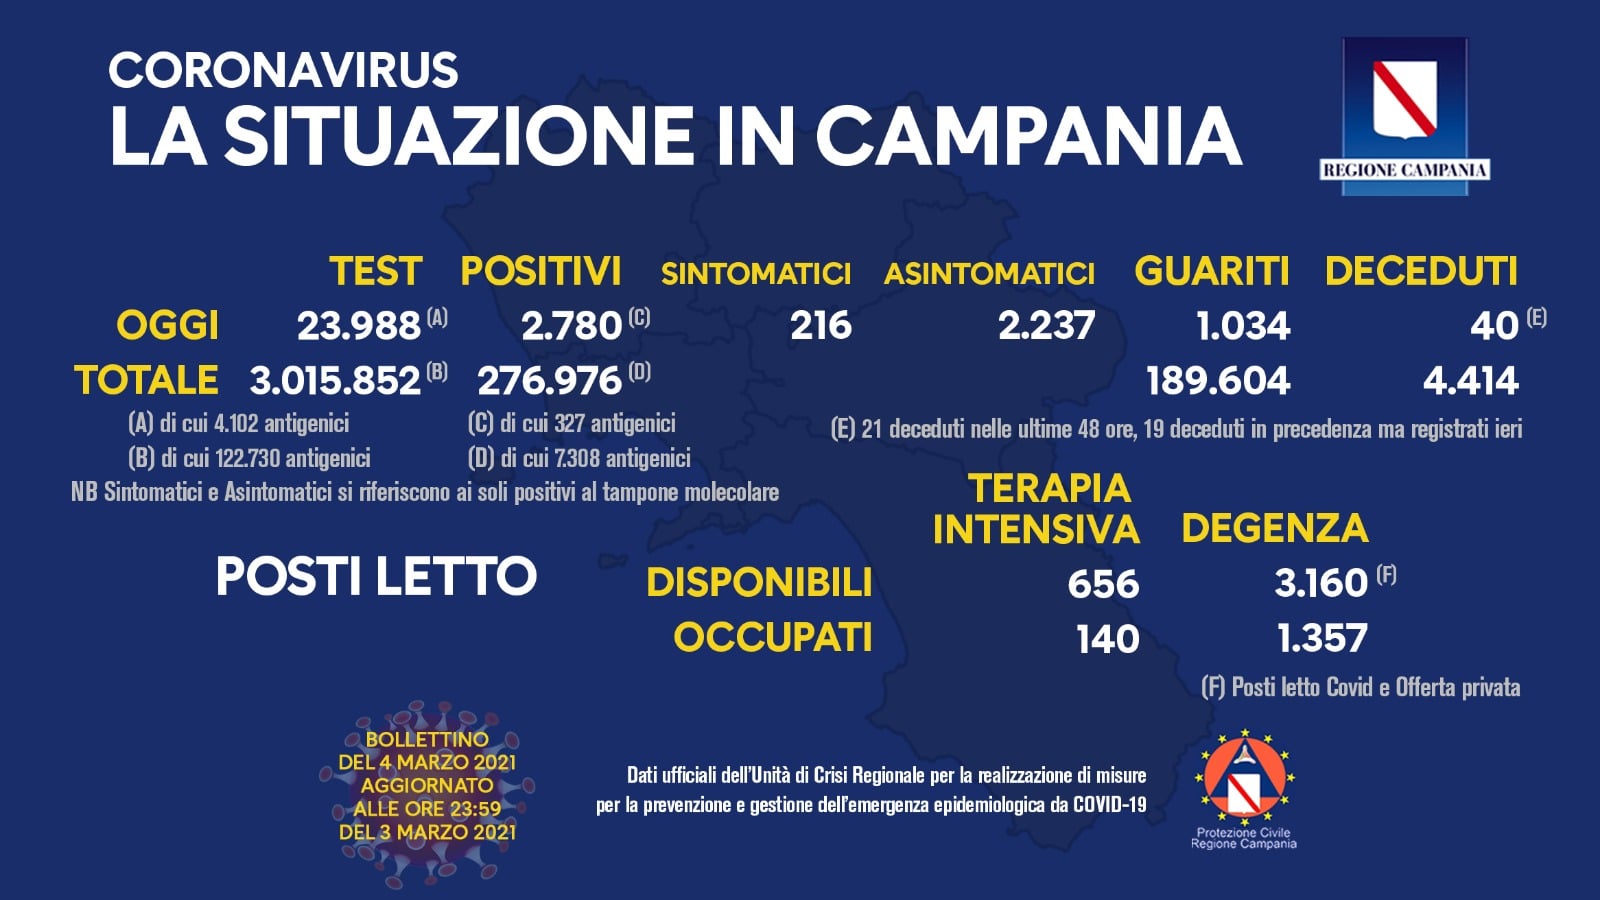 Campania, 2780 positivi. Il tasso positivi/tamponi risale all’11,58%